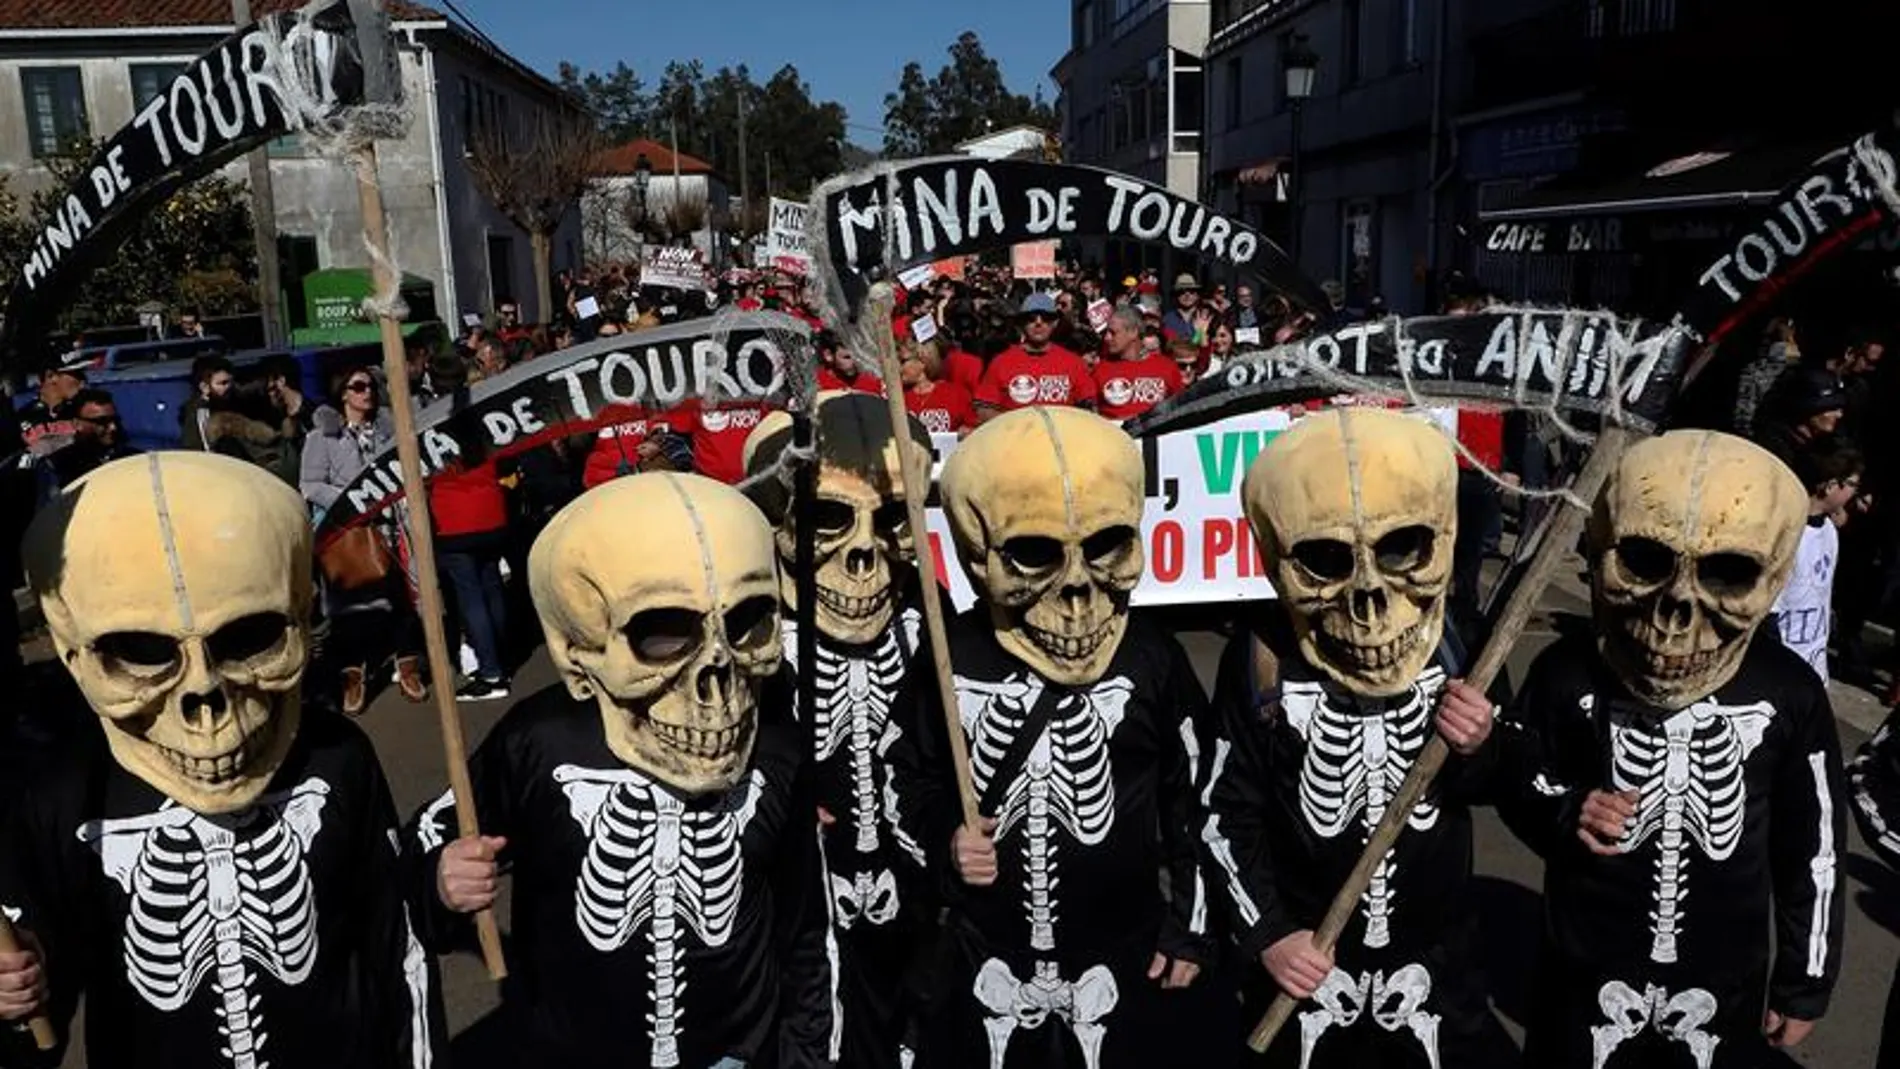 Vecinos disfrazados con calaveras se manifiestan en Touro contra la reapertura de una mina de cobre